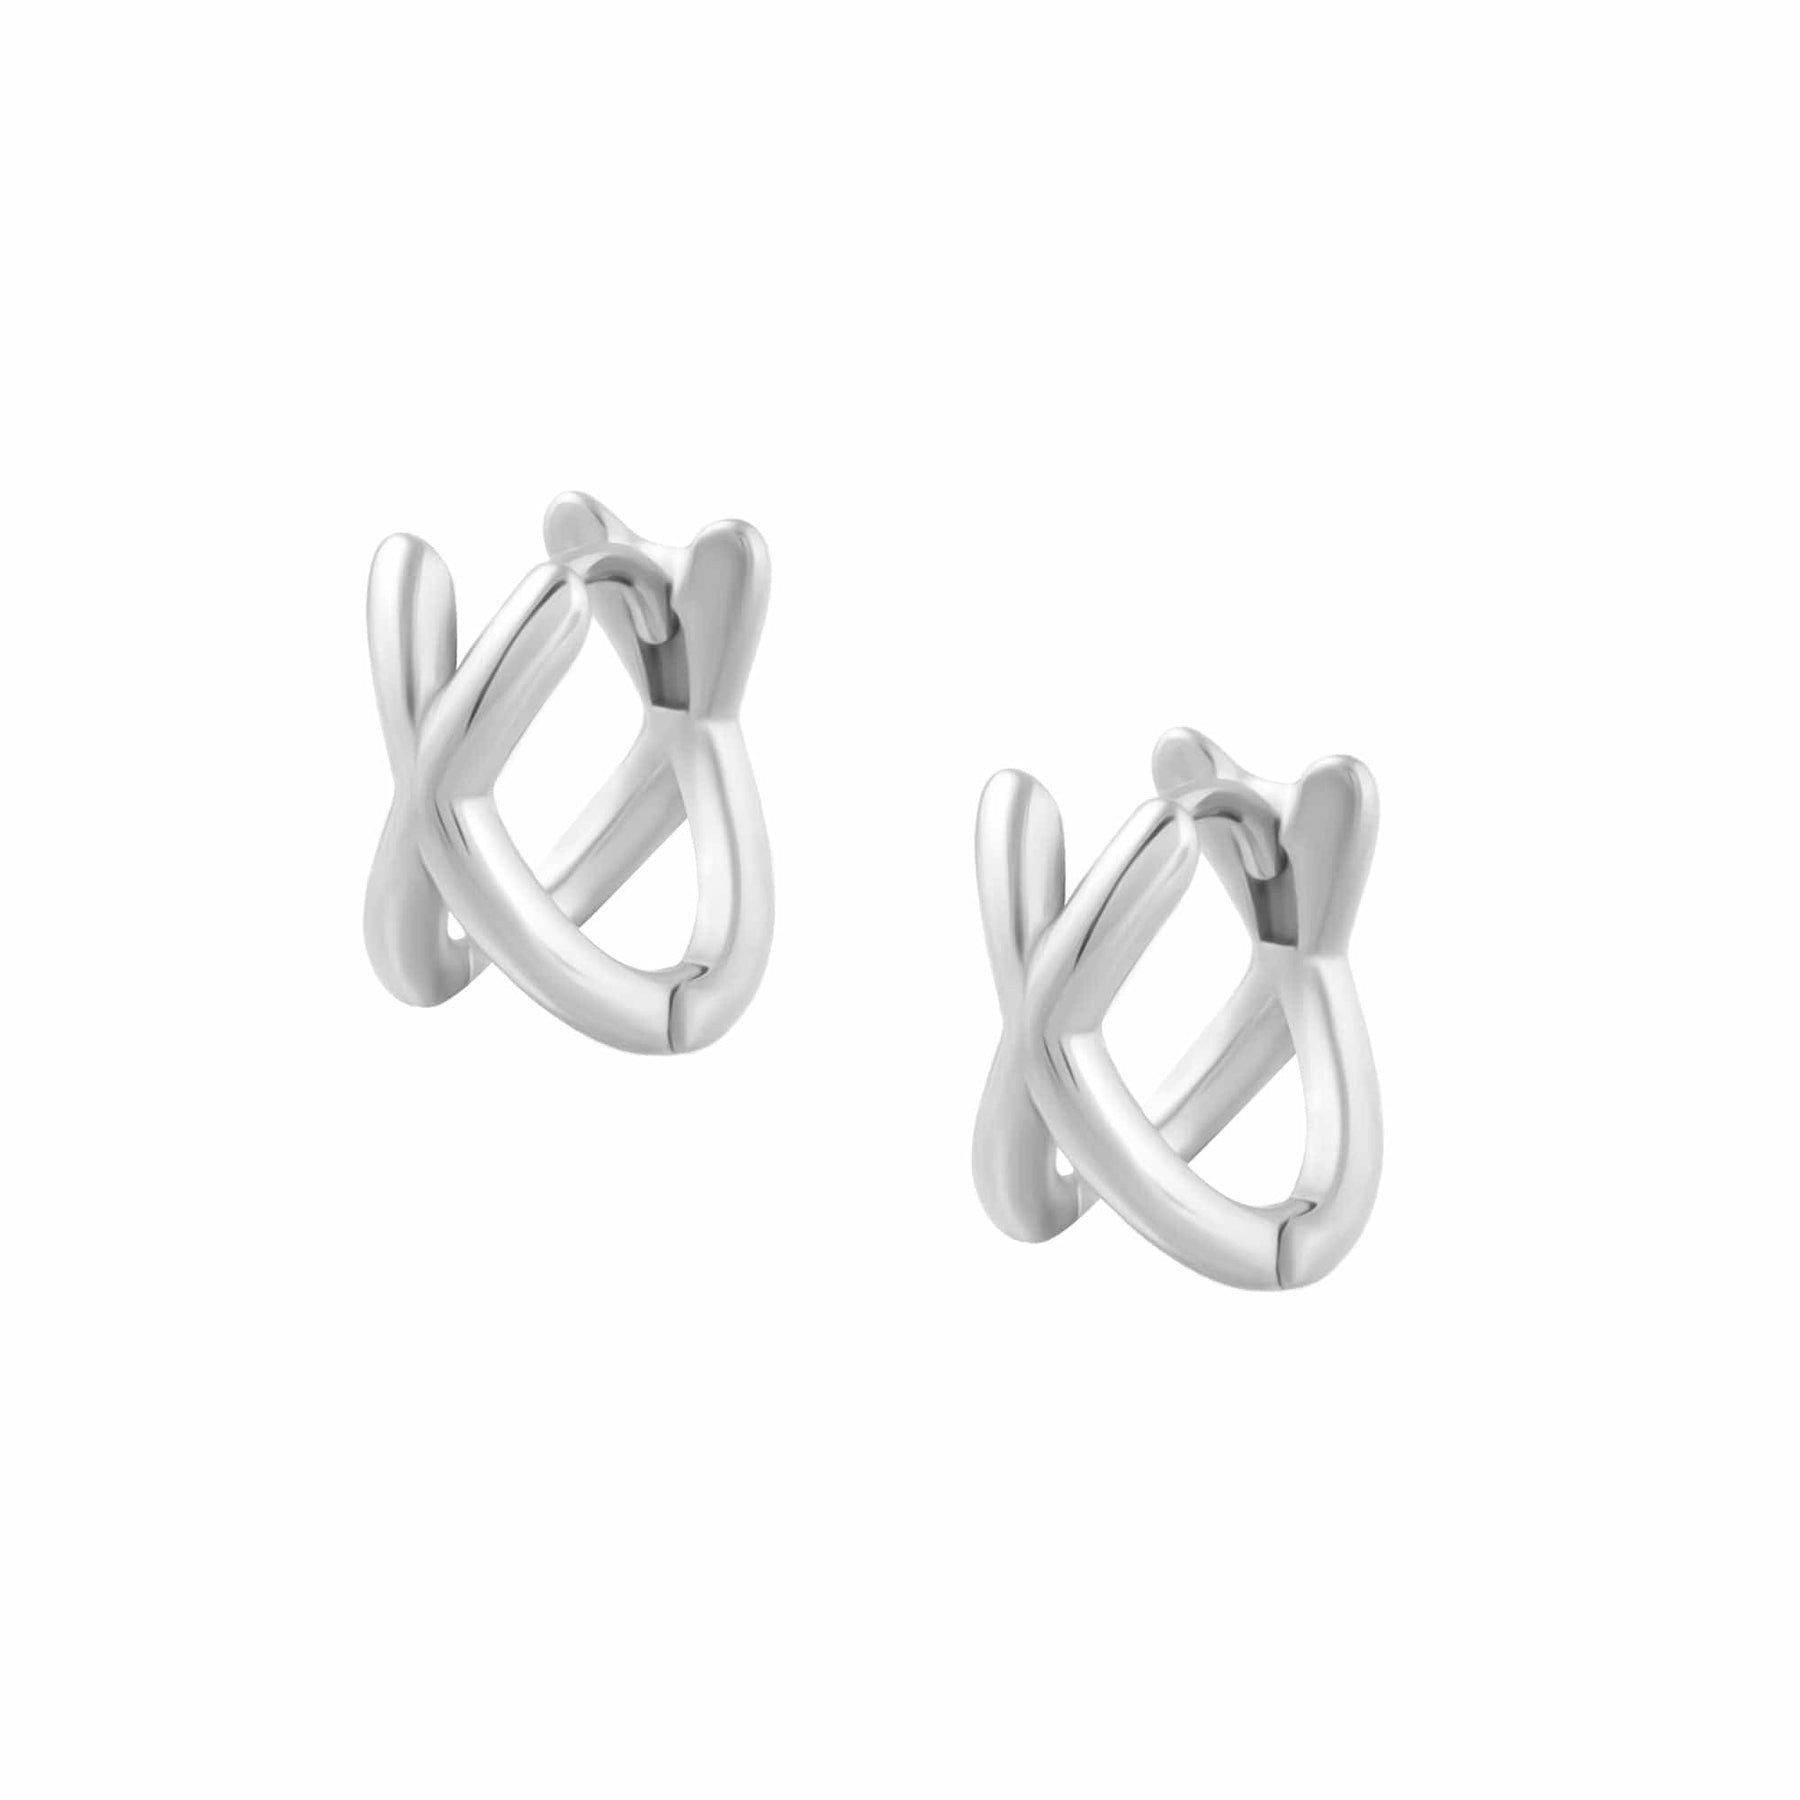 BohoMoon Stainless Steel Criss Cross Hoop Earrings Silver